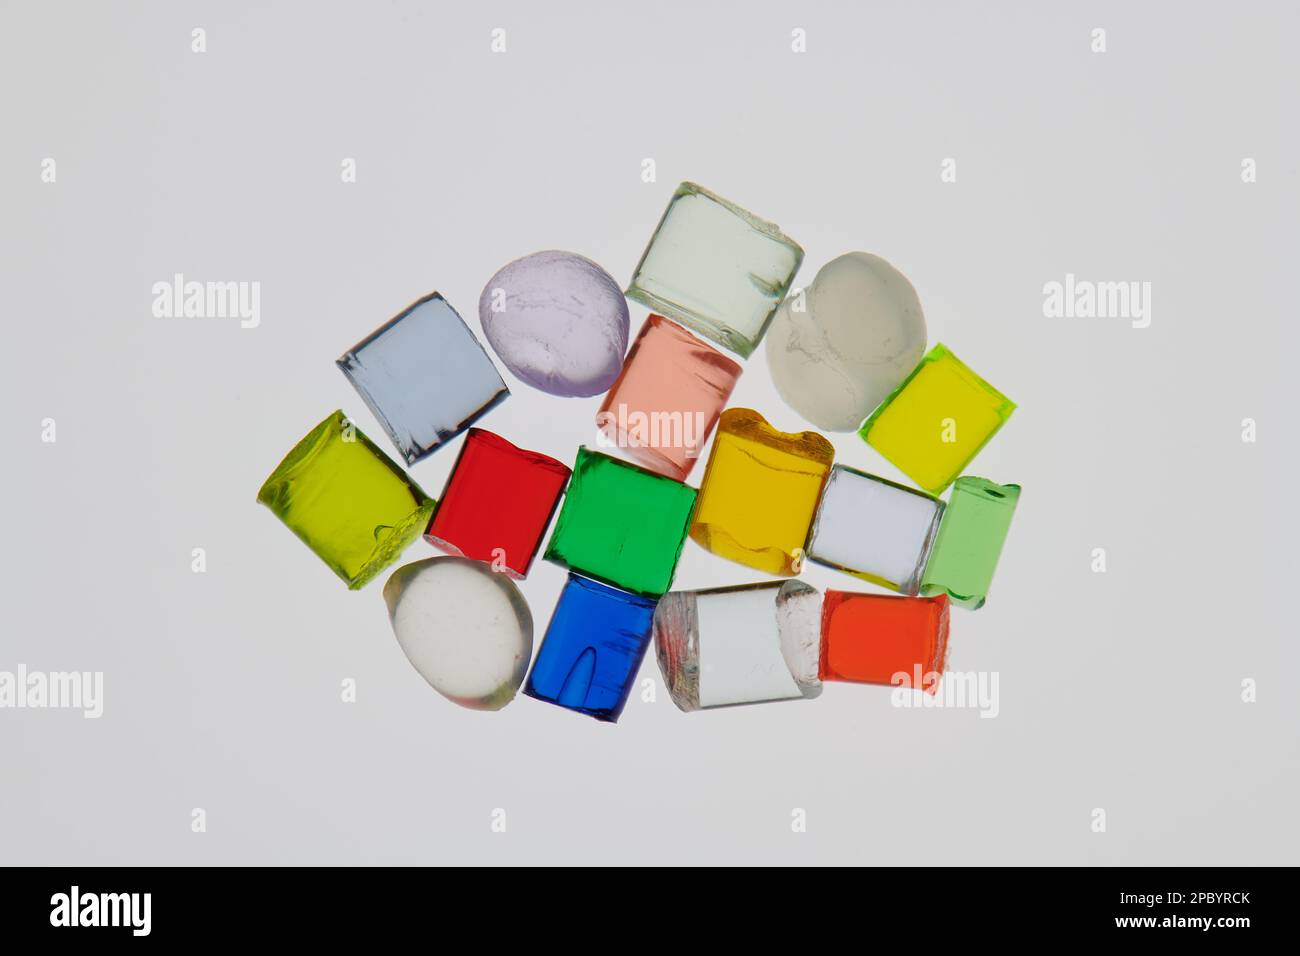 tas de plusieurs différentes résines polymères plastiques transparentes colorées Banque D'Images